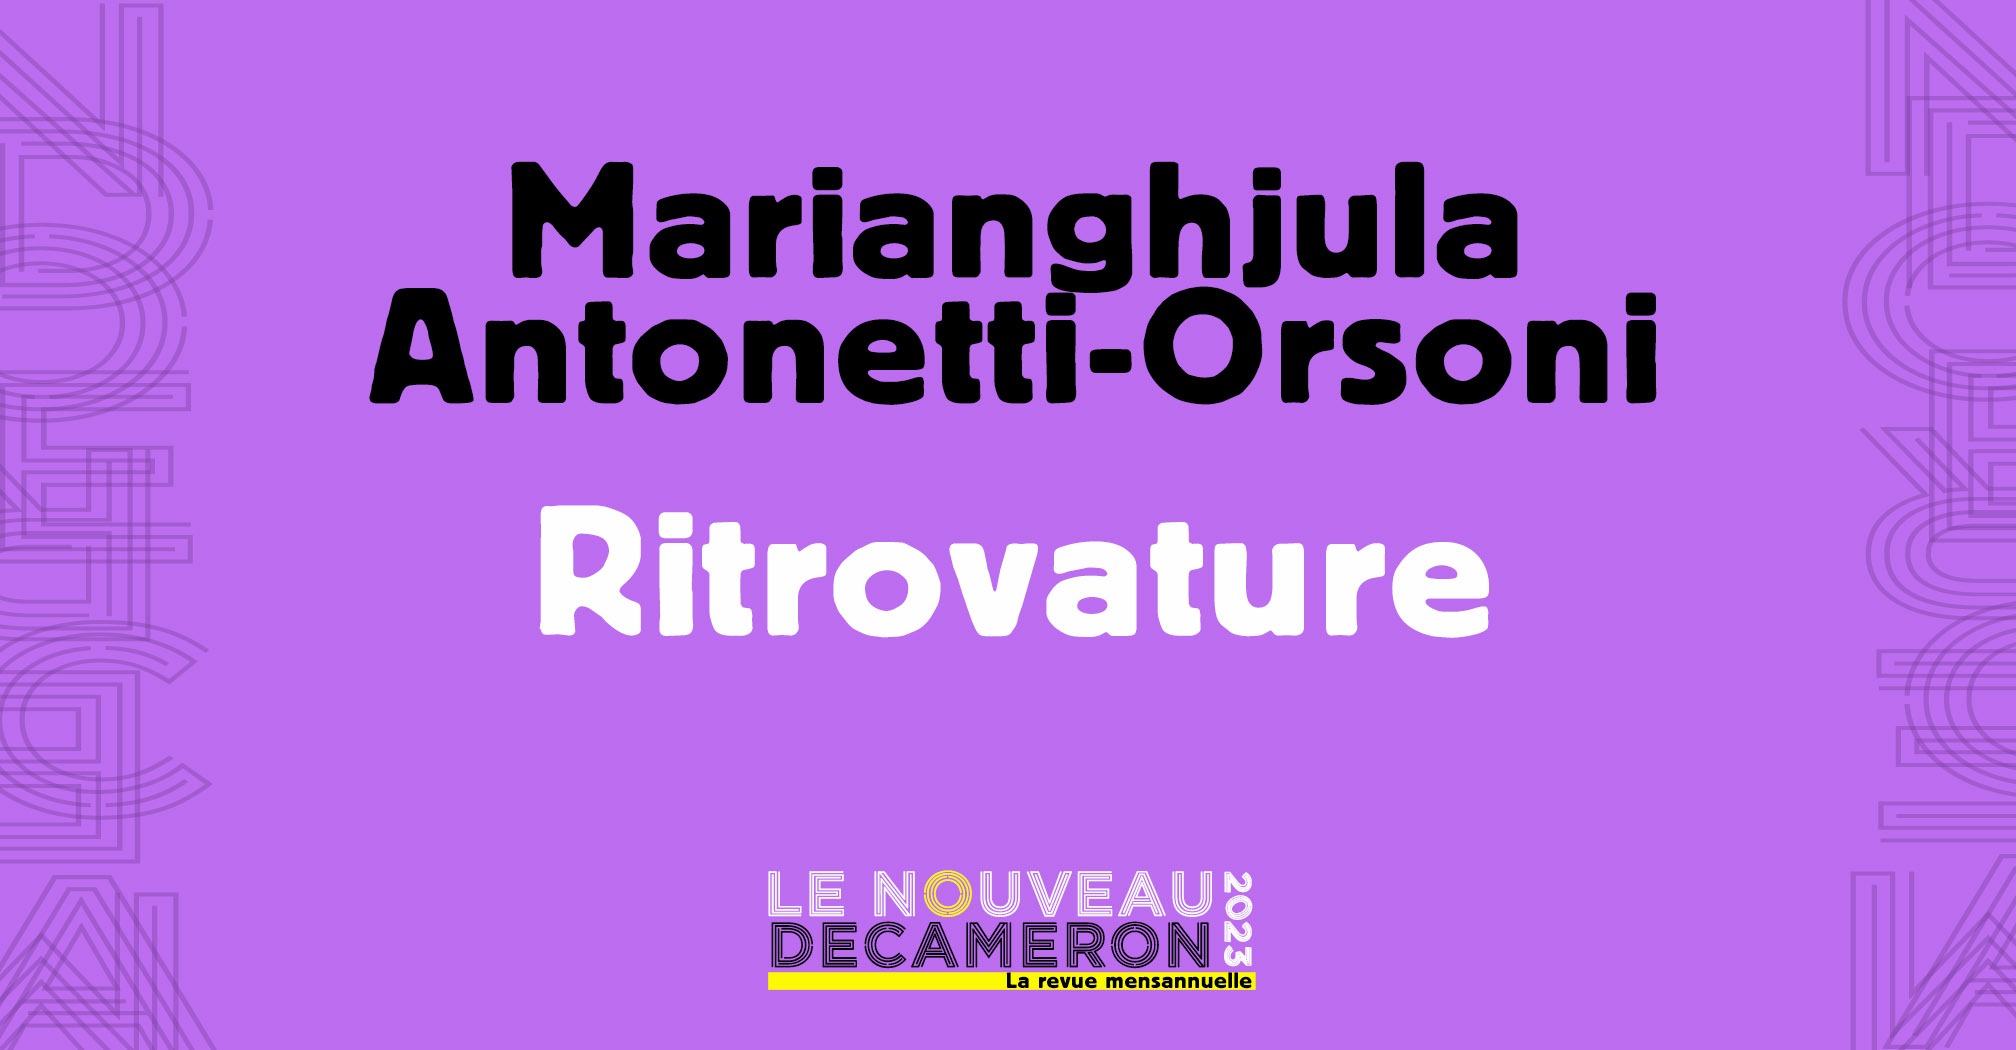 Marianghjula Antonetti-Orsoni - Ritrovature